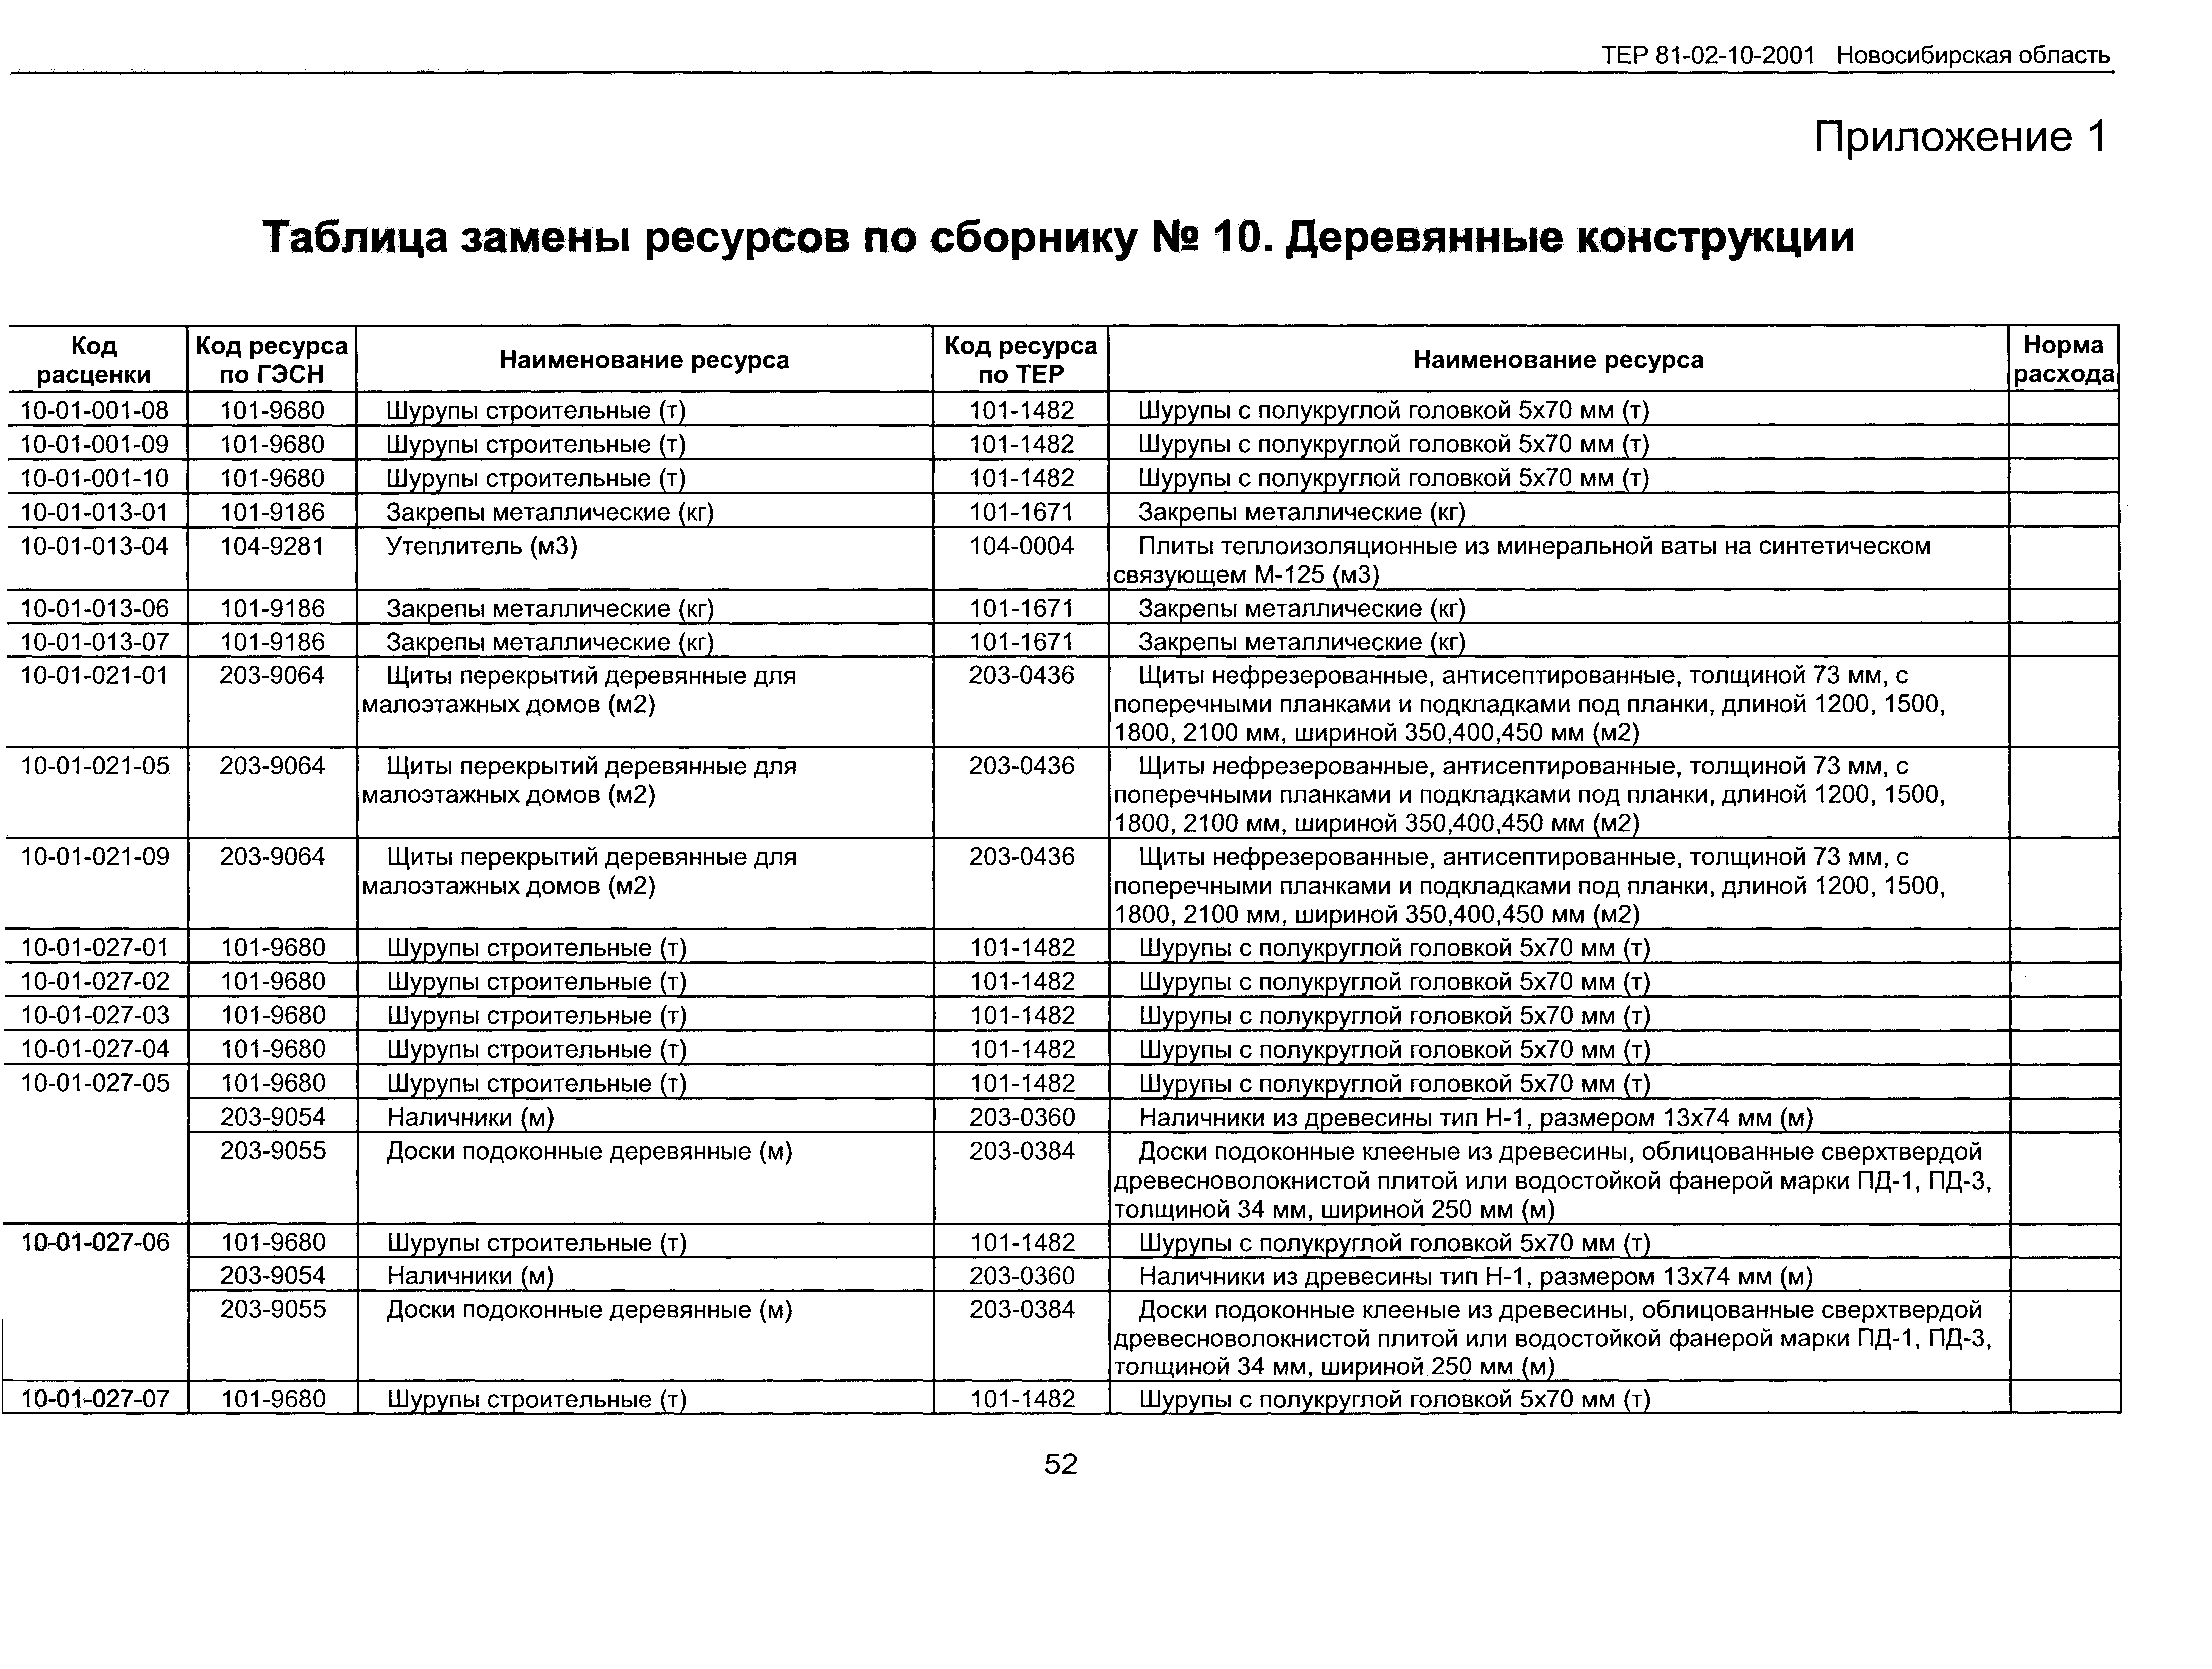 ТЕР 2001-10 Новосибирской области